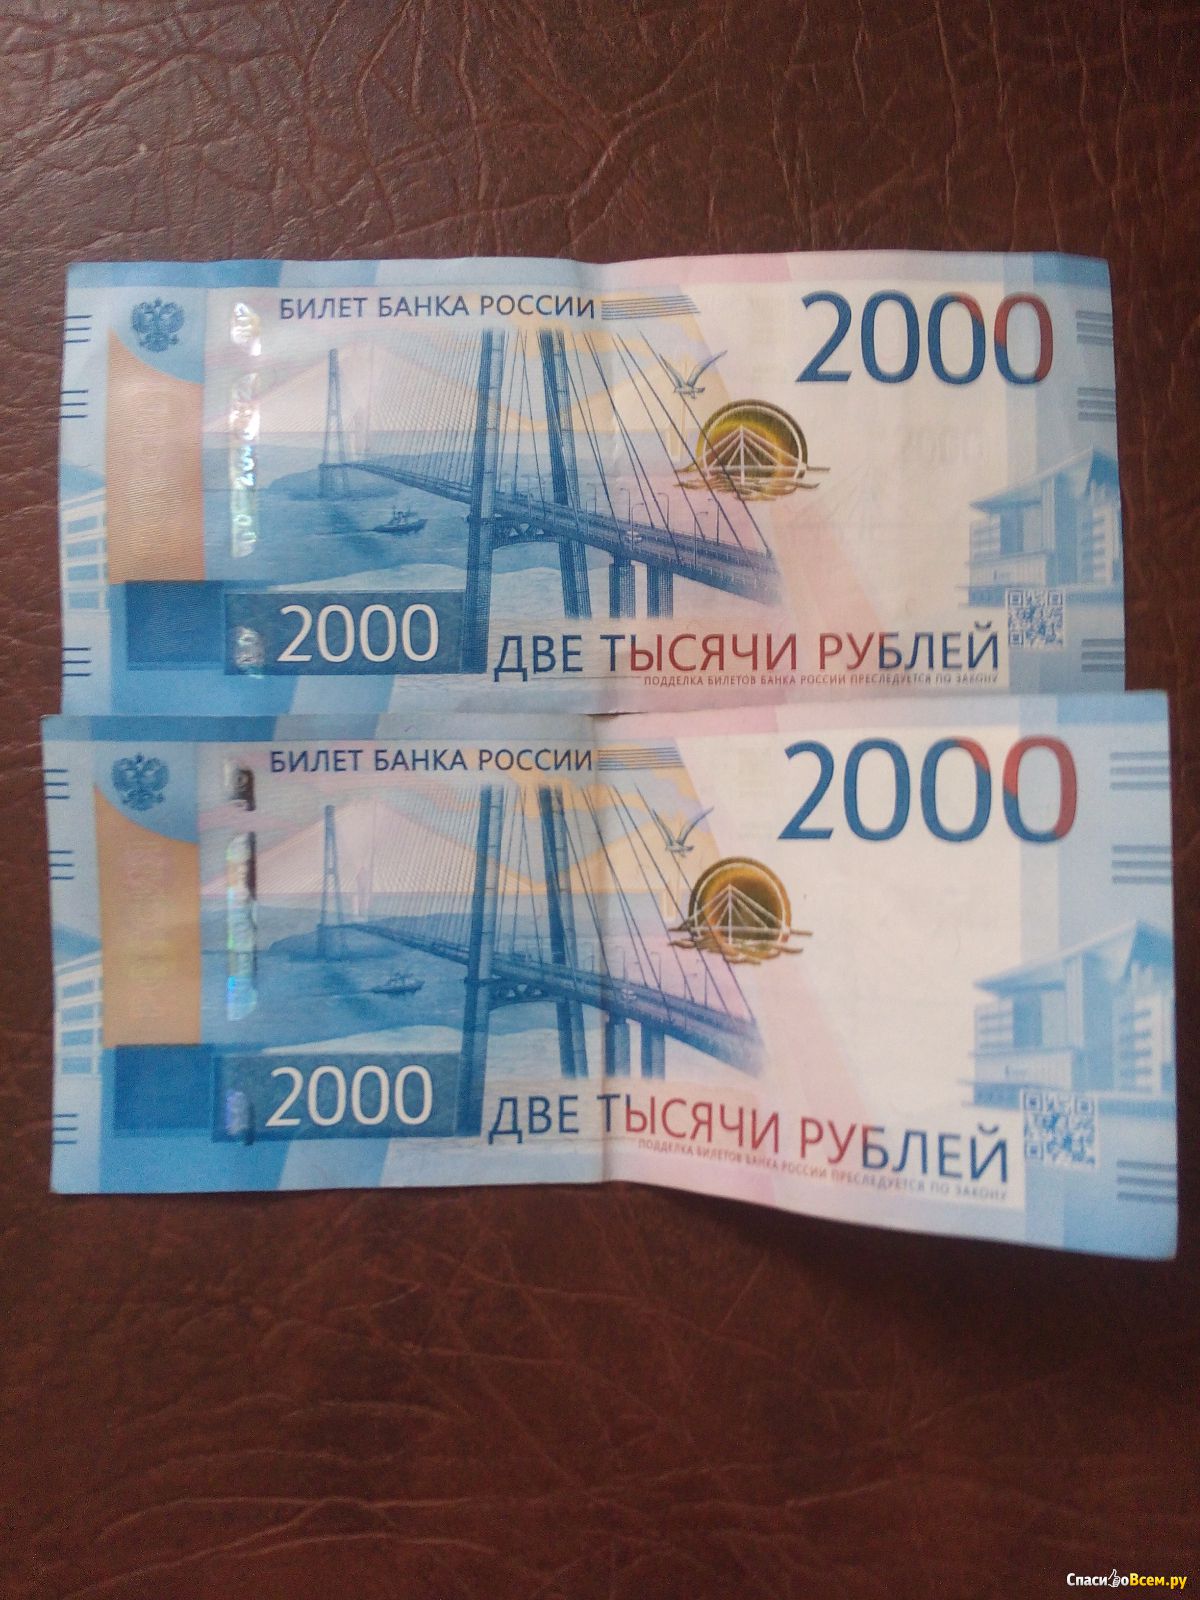 Купюра 2 тысячи. Купюра 2000. 2000 Рублей. Купюра 2000 рублей. Банкнота 2000 руб.